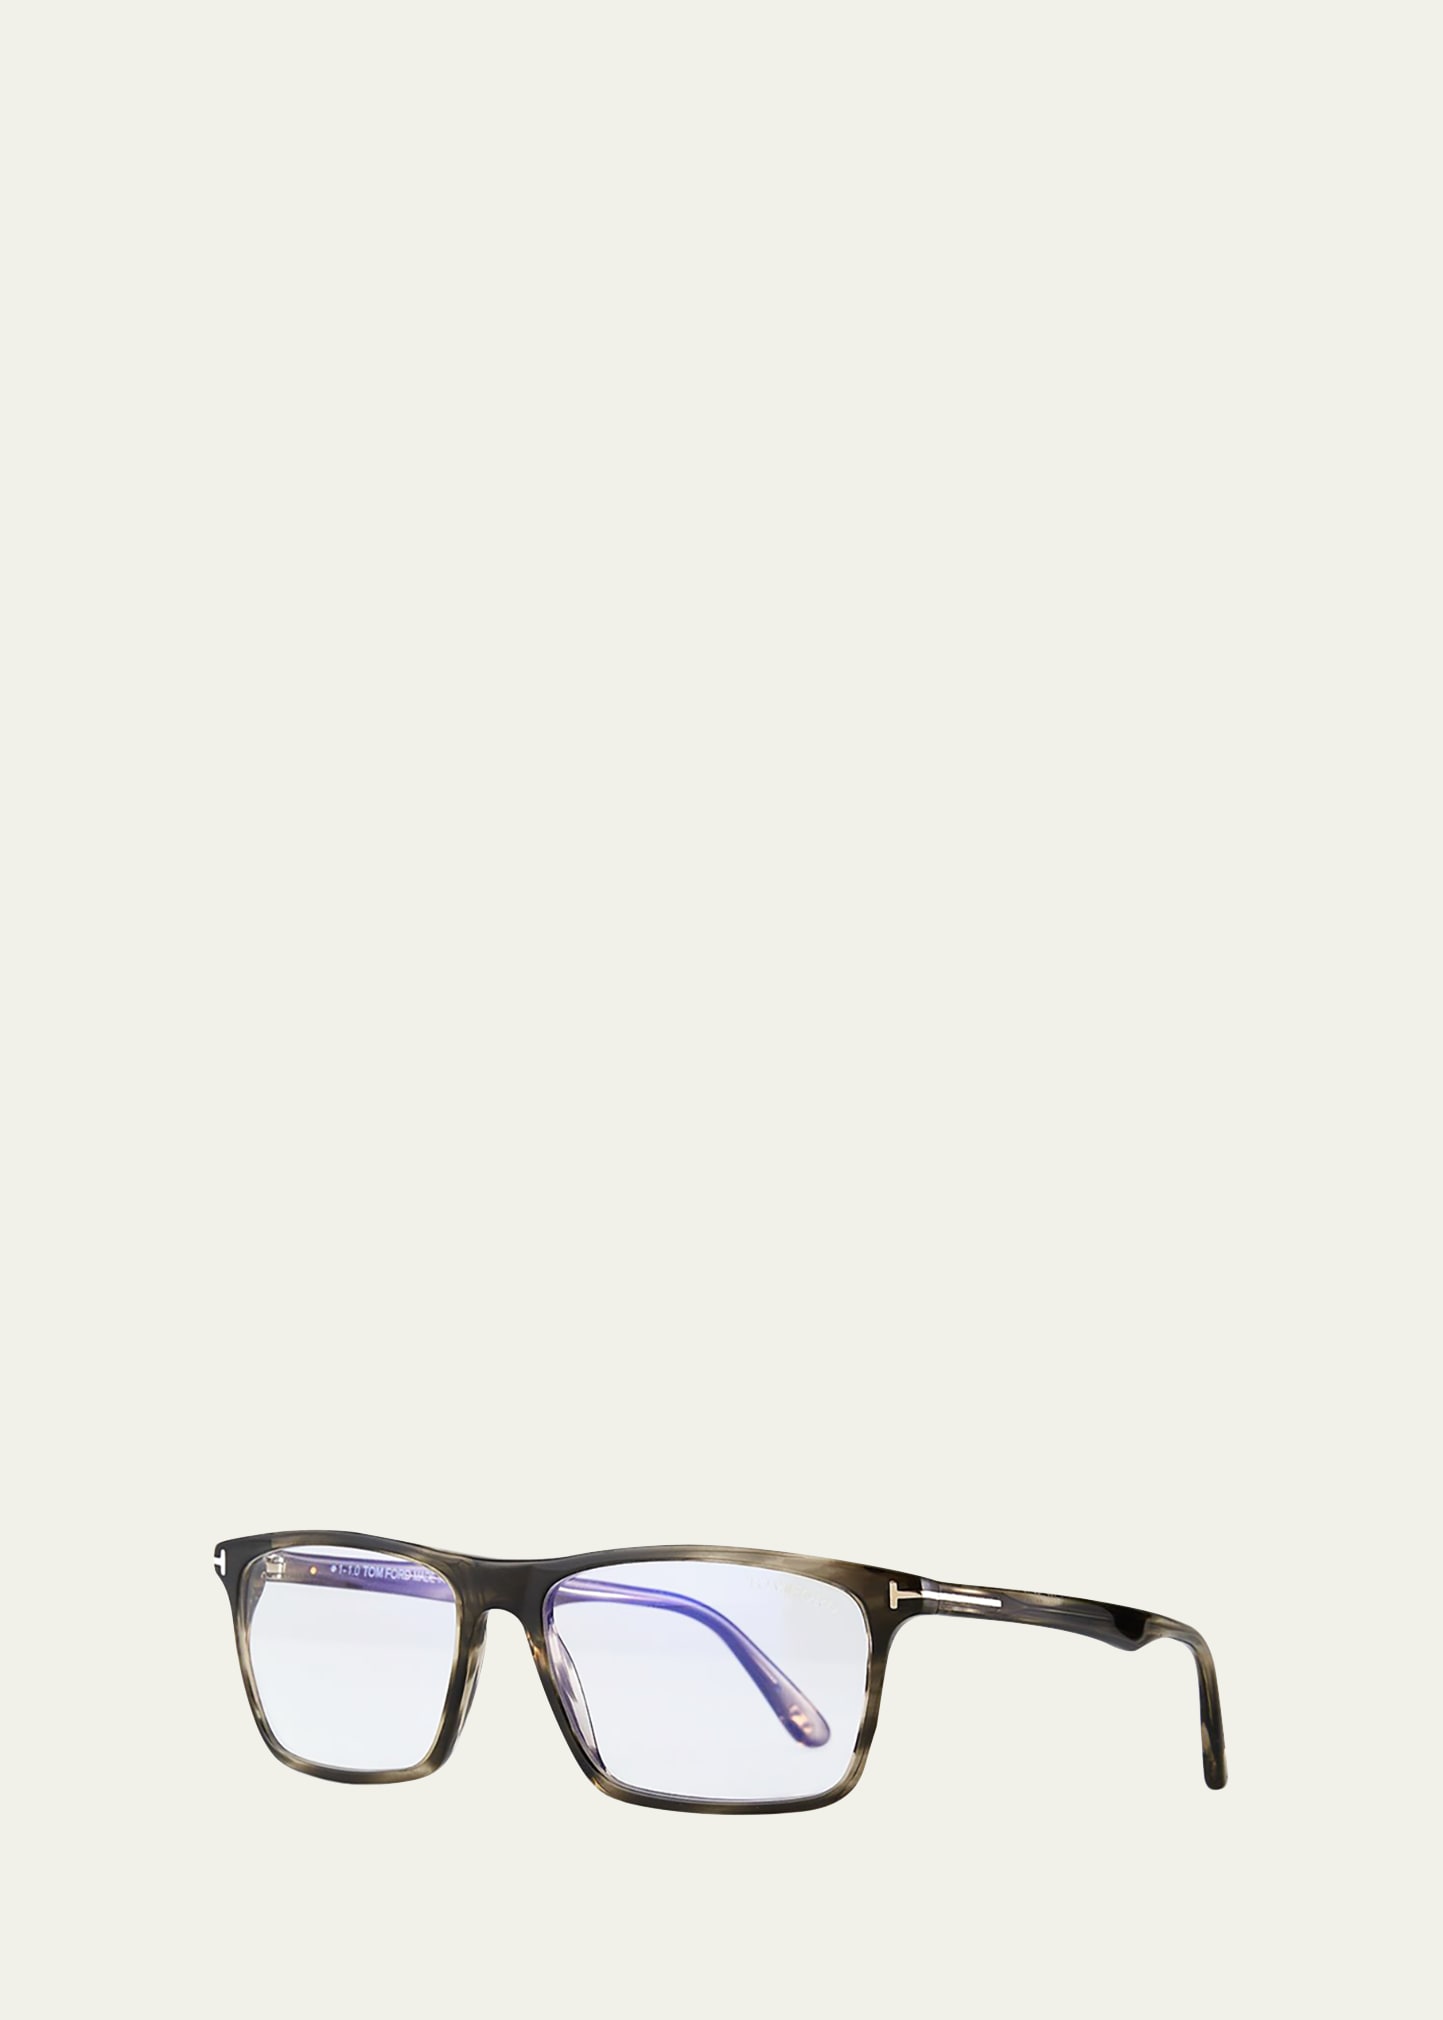 Tom Ford Men's Ft5681-bm56 Blue Light Blocking Optical Glasses In Brown